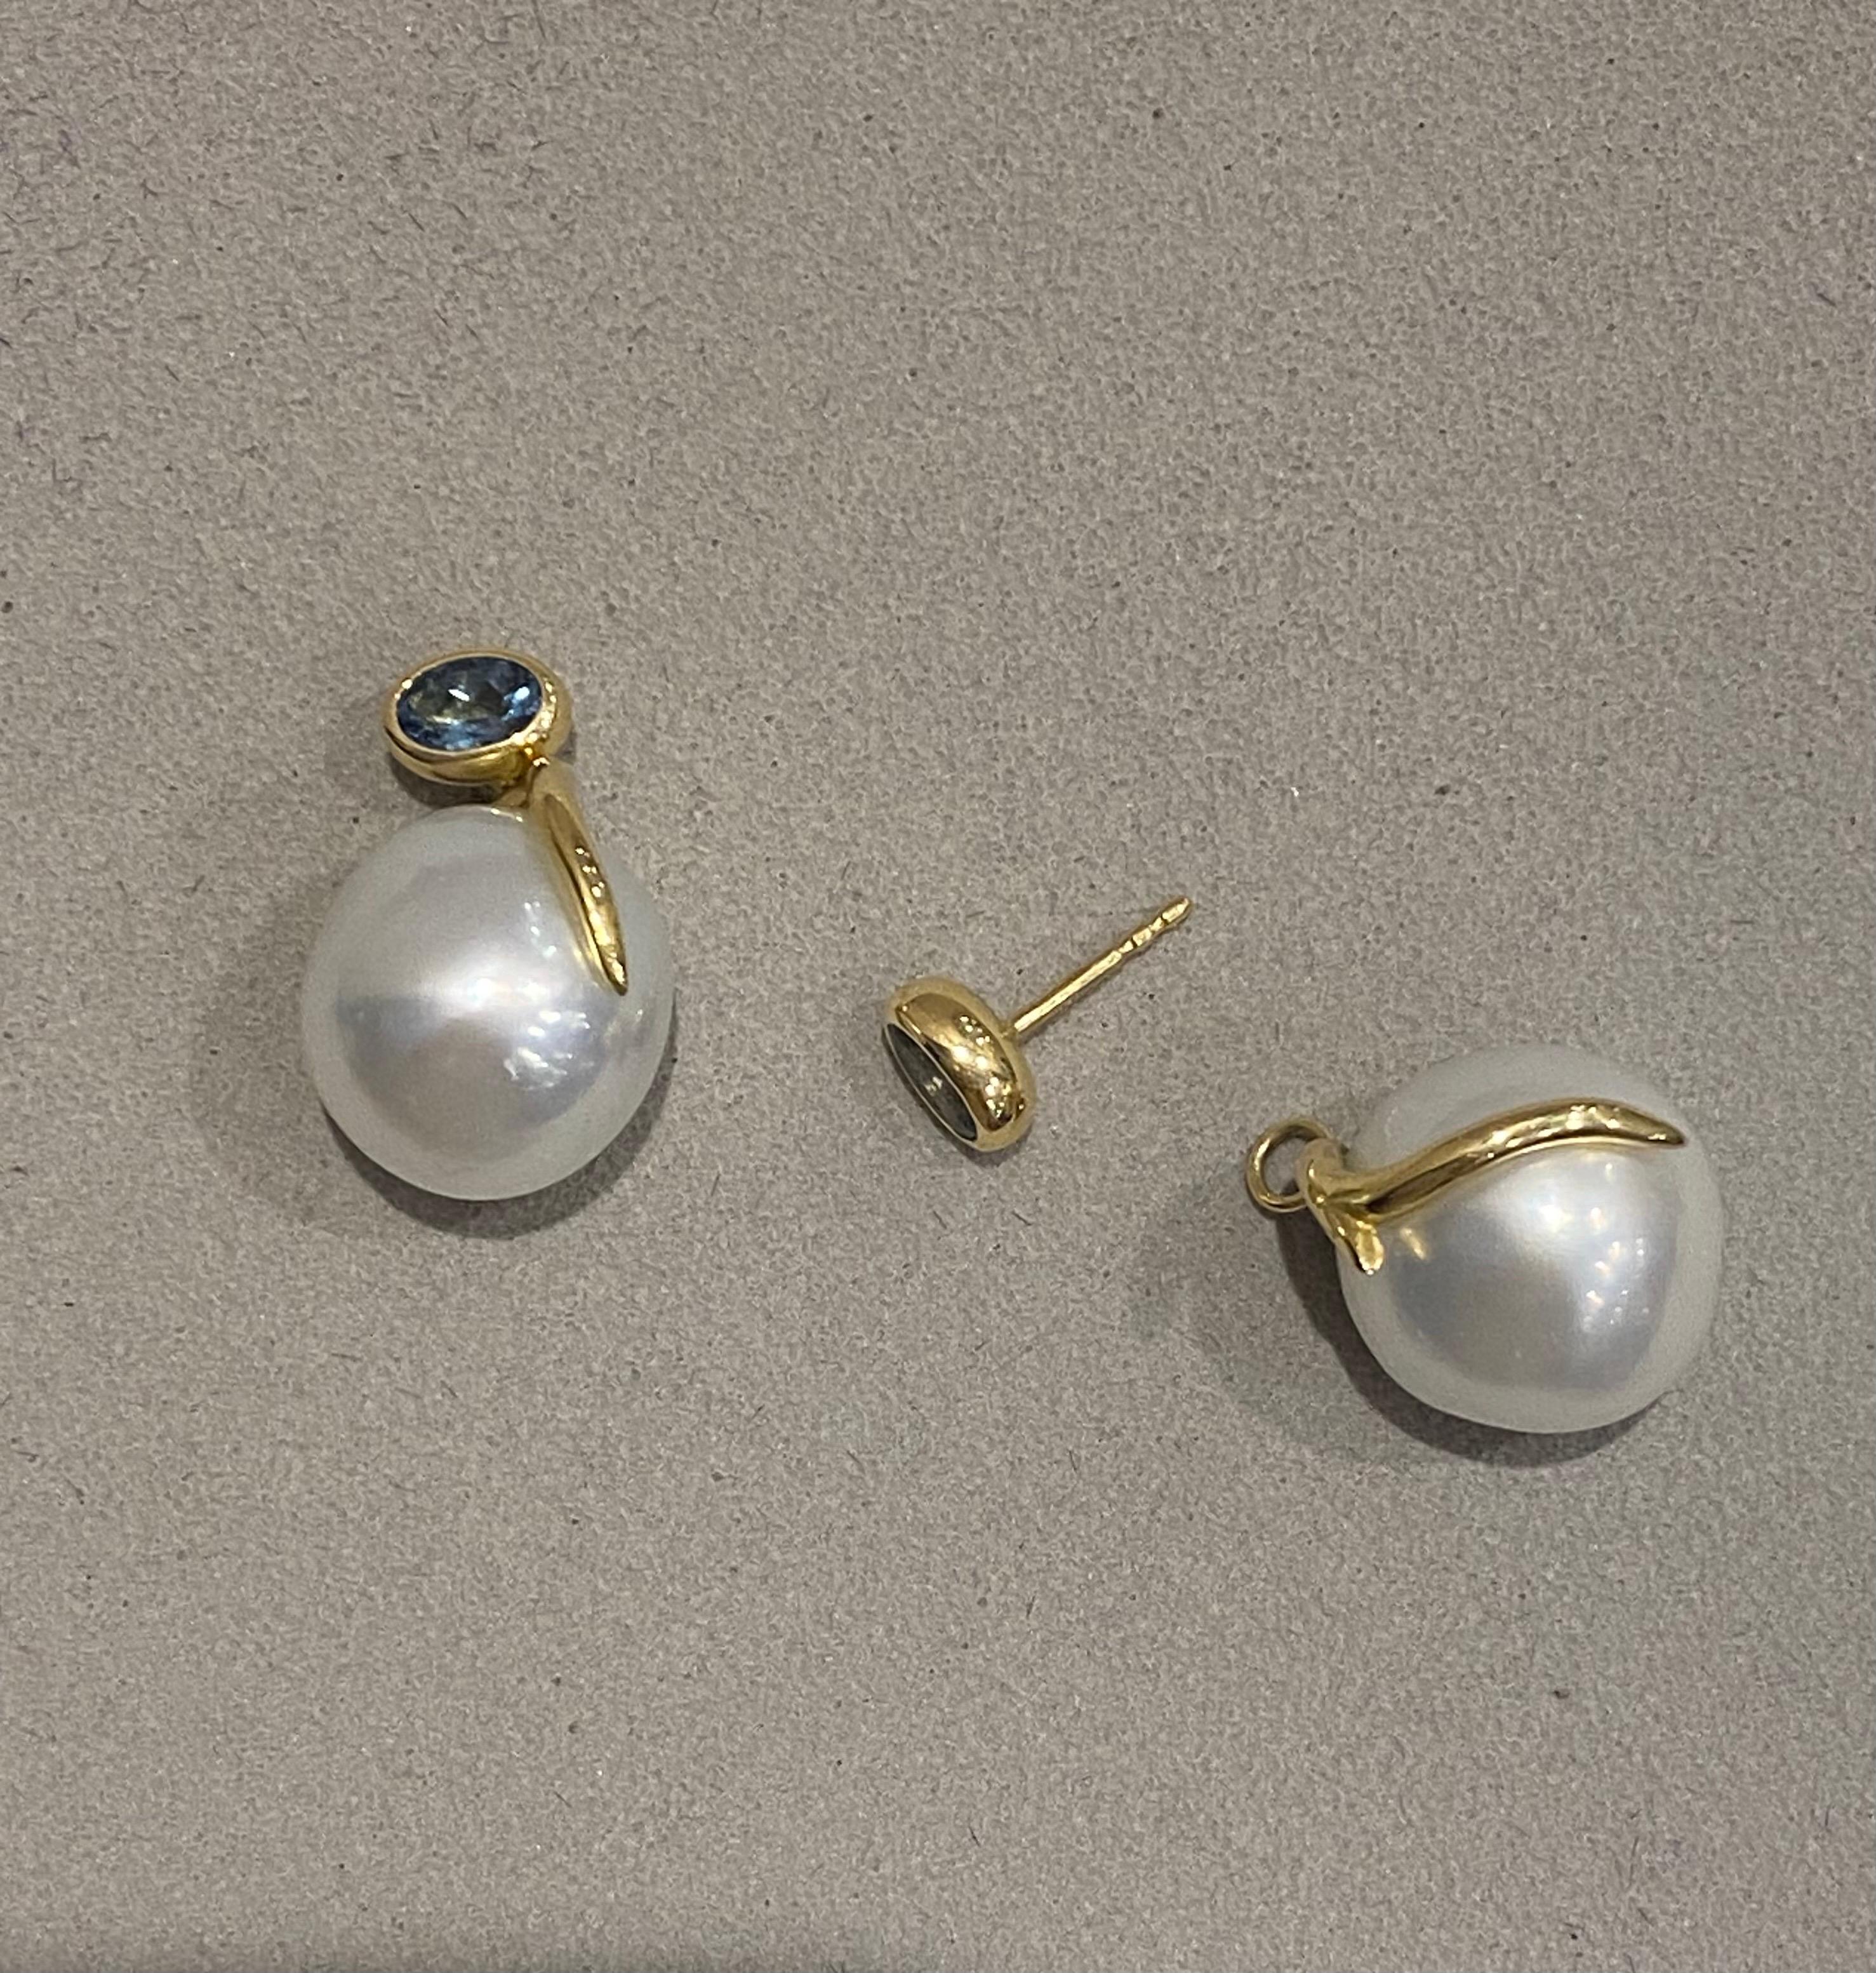 aquamarine and pearl earrings